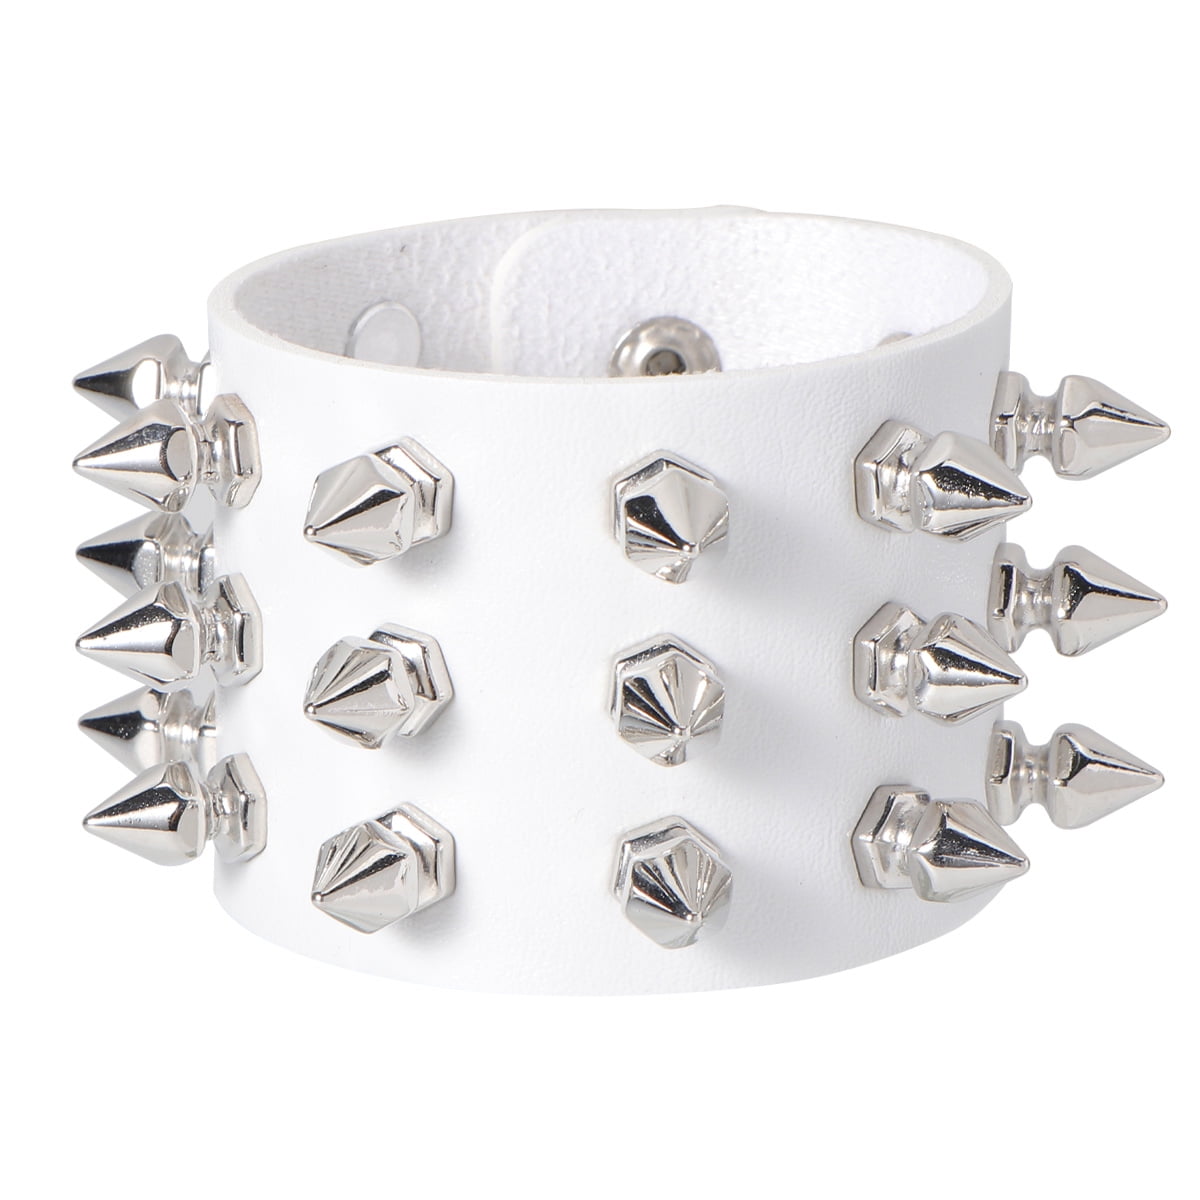 Skull Bracelet,White Howlite Skull Beads,Gothic Jewellery,Alternative, Punk  gift | eBay